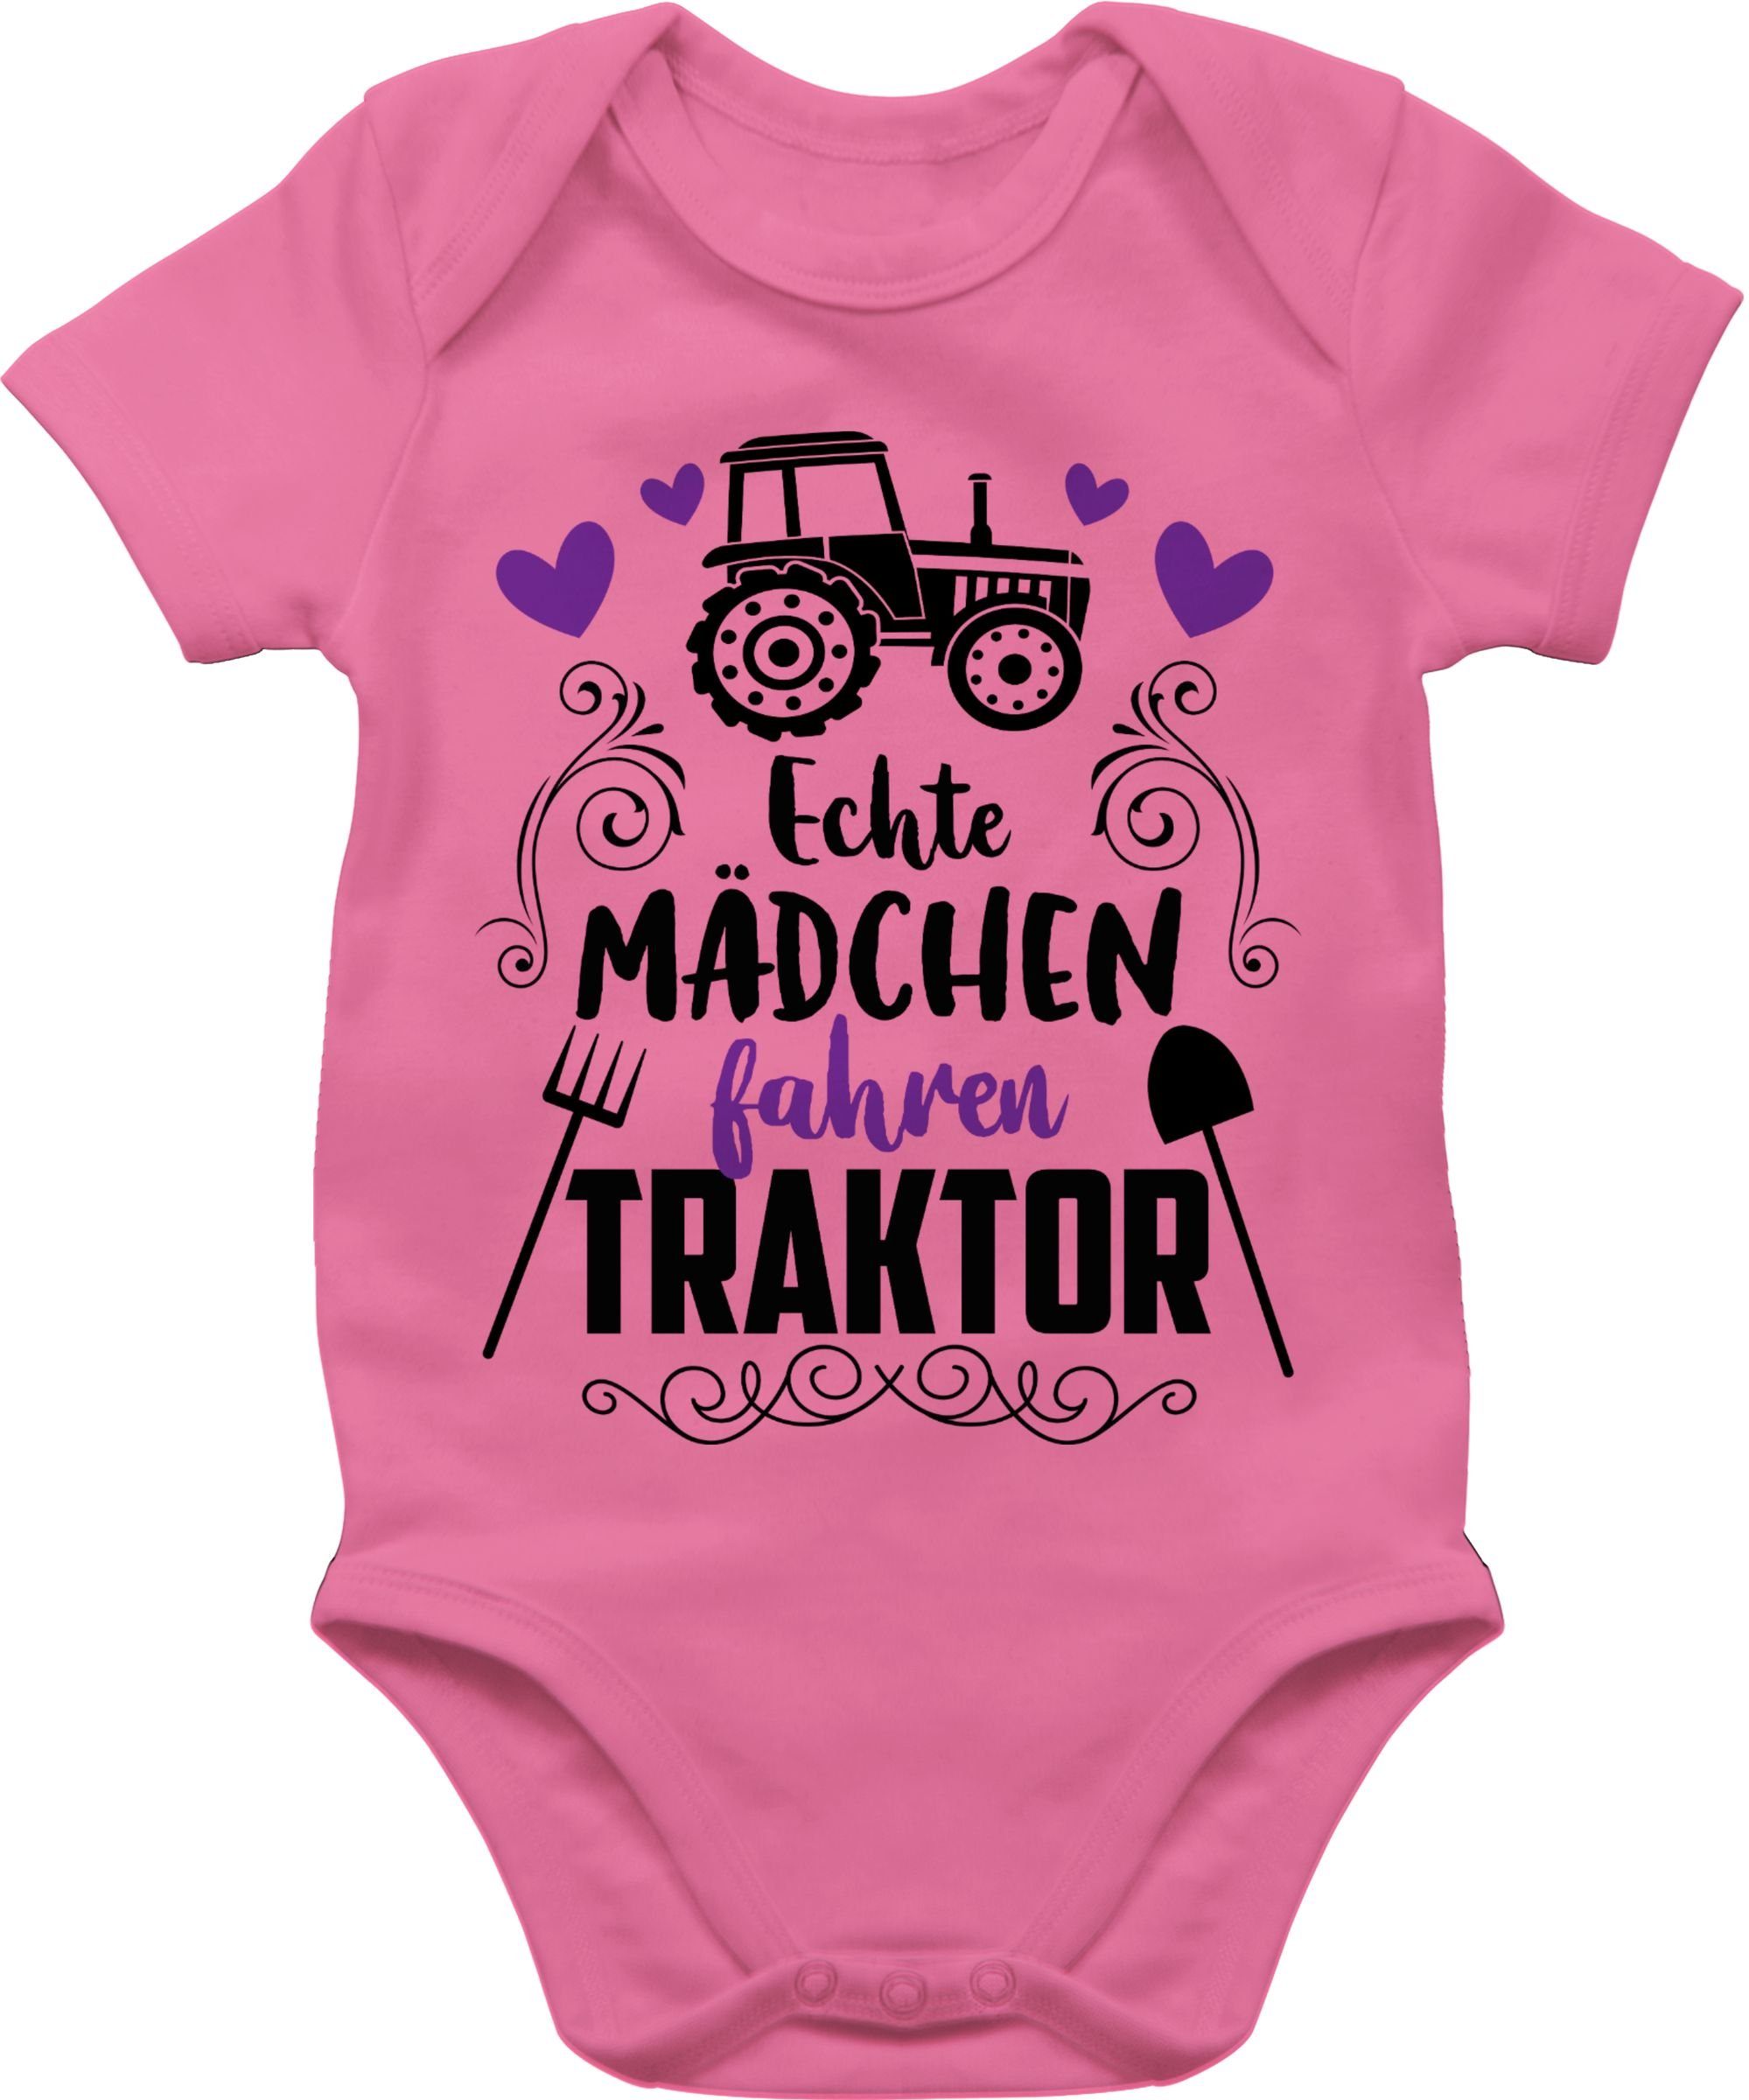 【Klassisch】 Shirtracer Shirtbody Echte Mädchen fahren 1 schwarz Co. Traktor Bagger Baby - Pink Traktor und